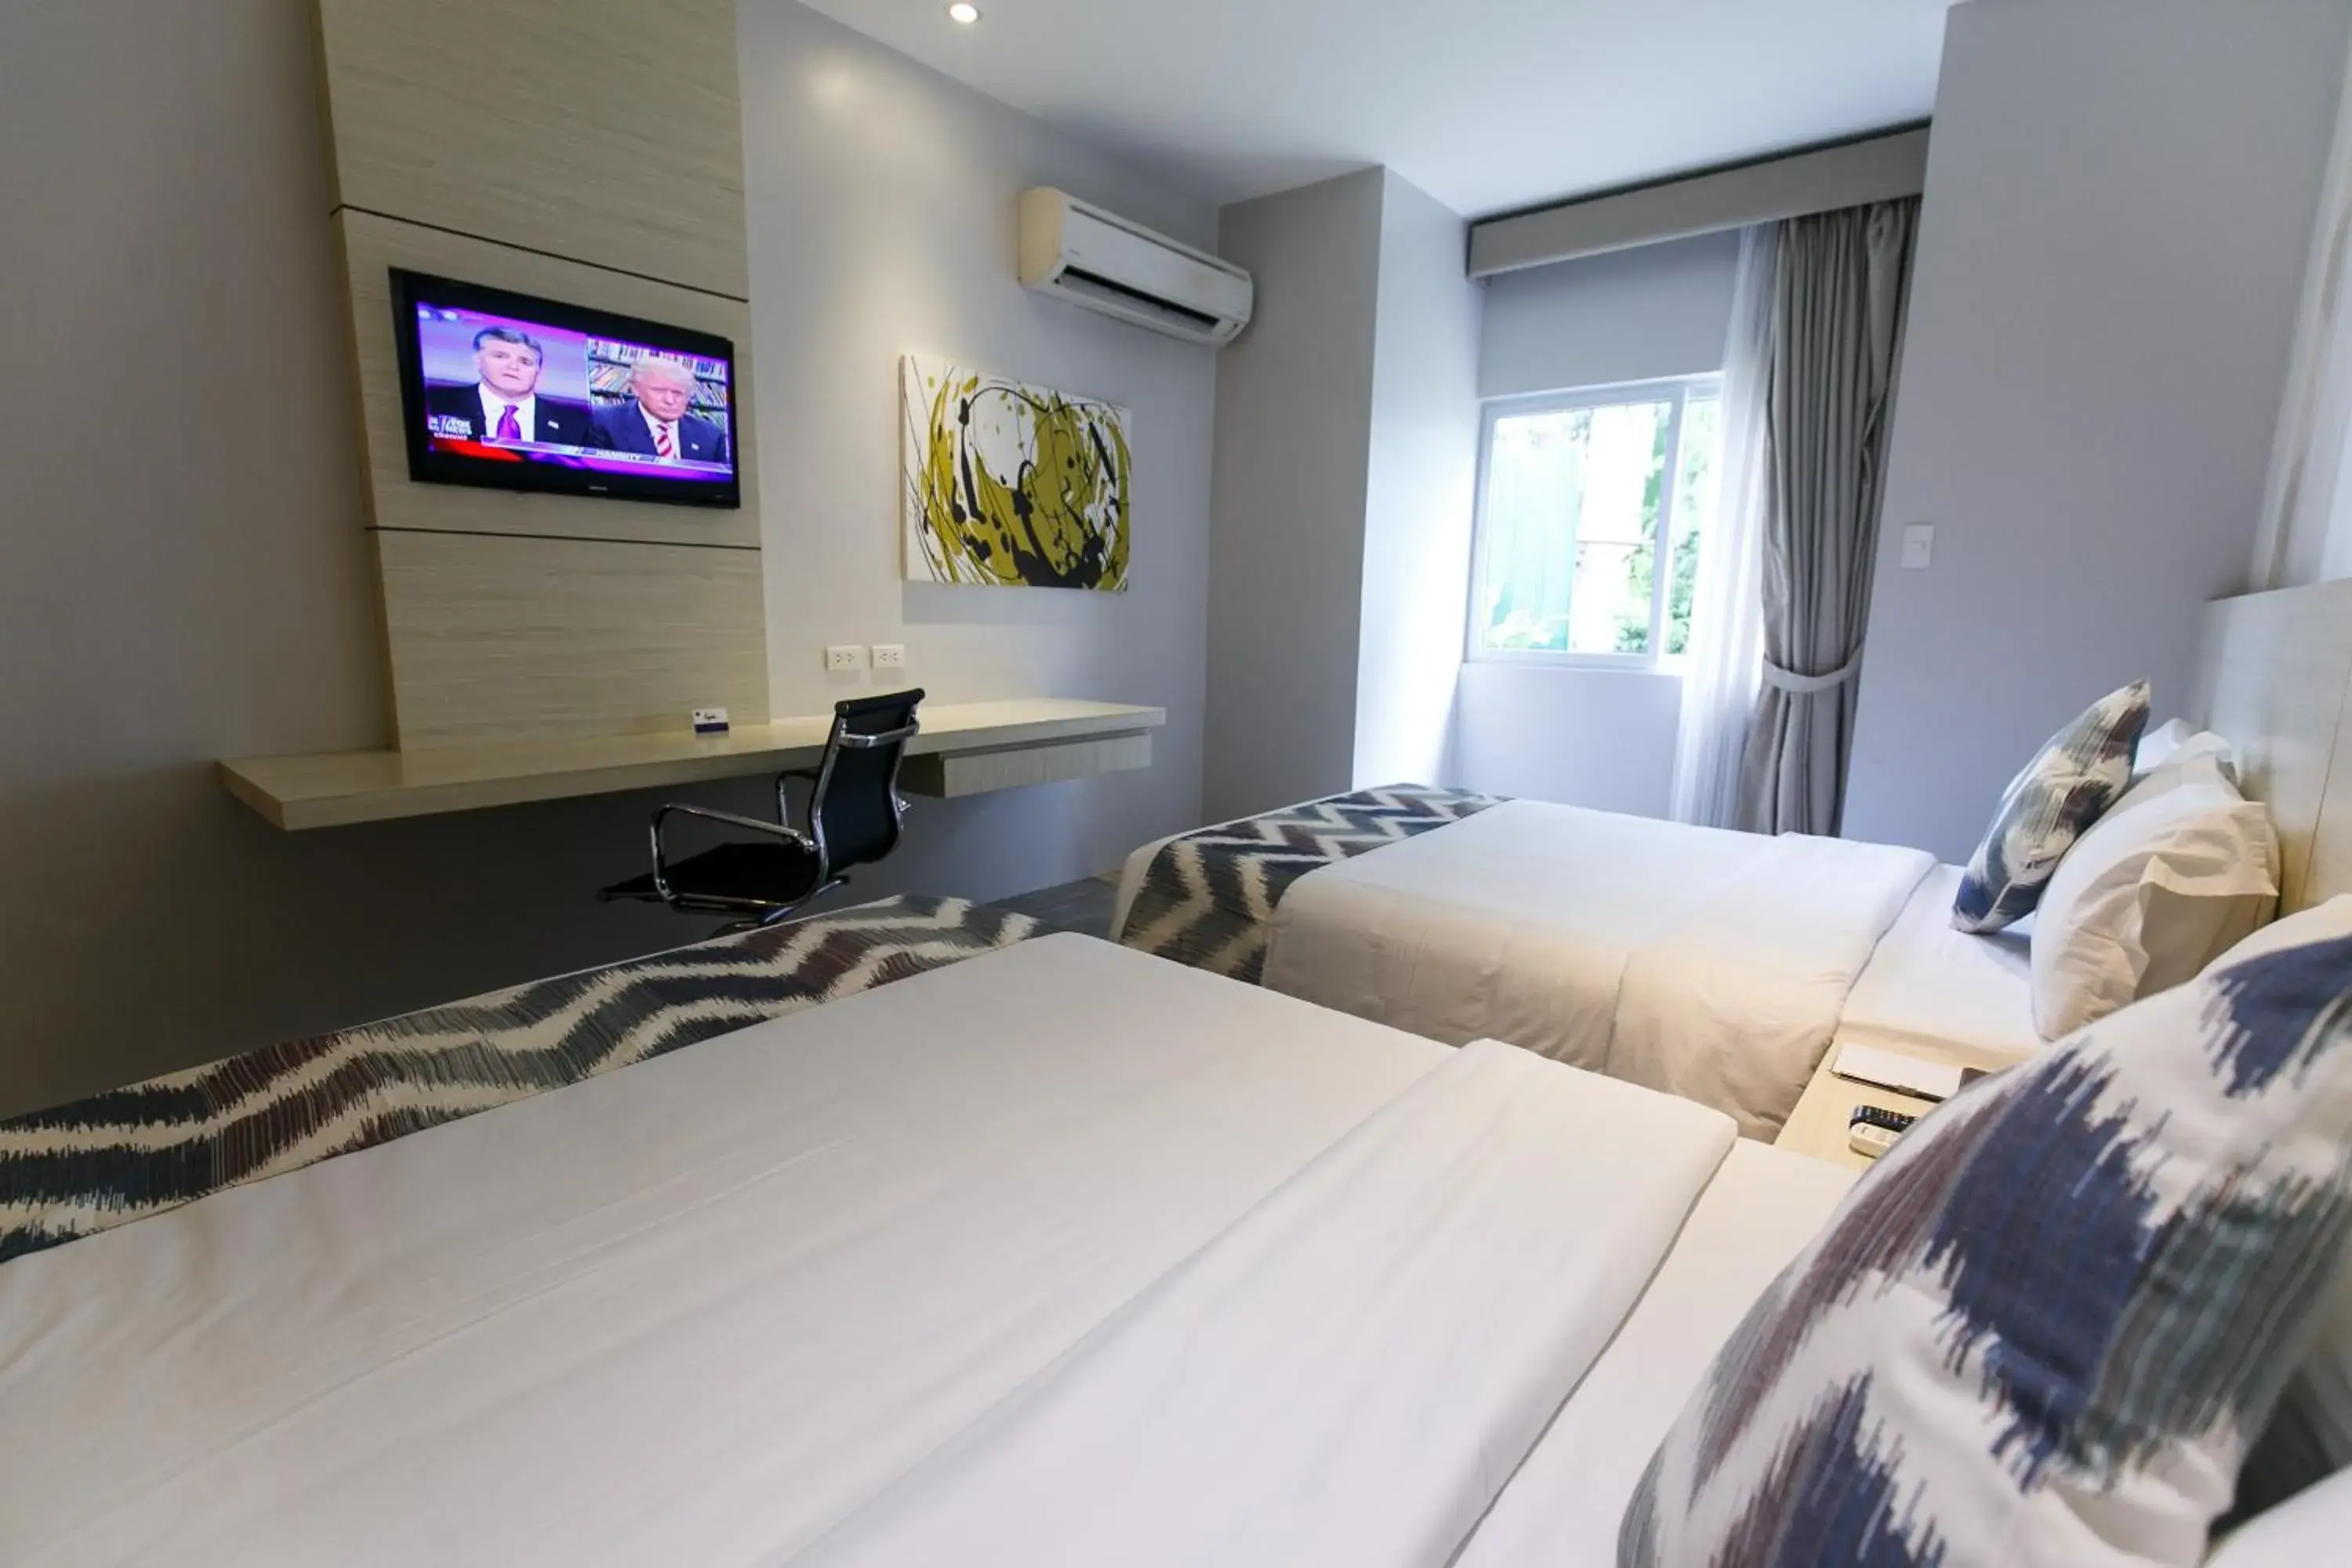 Bed, Room Photo in Solea Seaview Resort